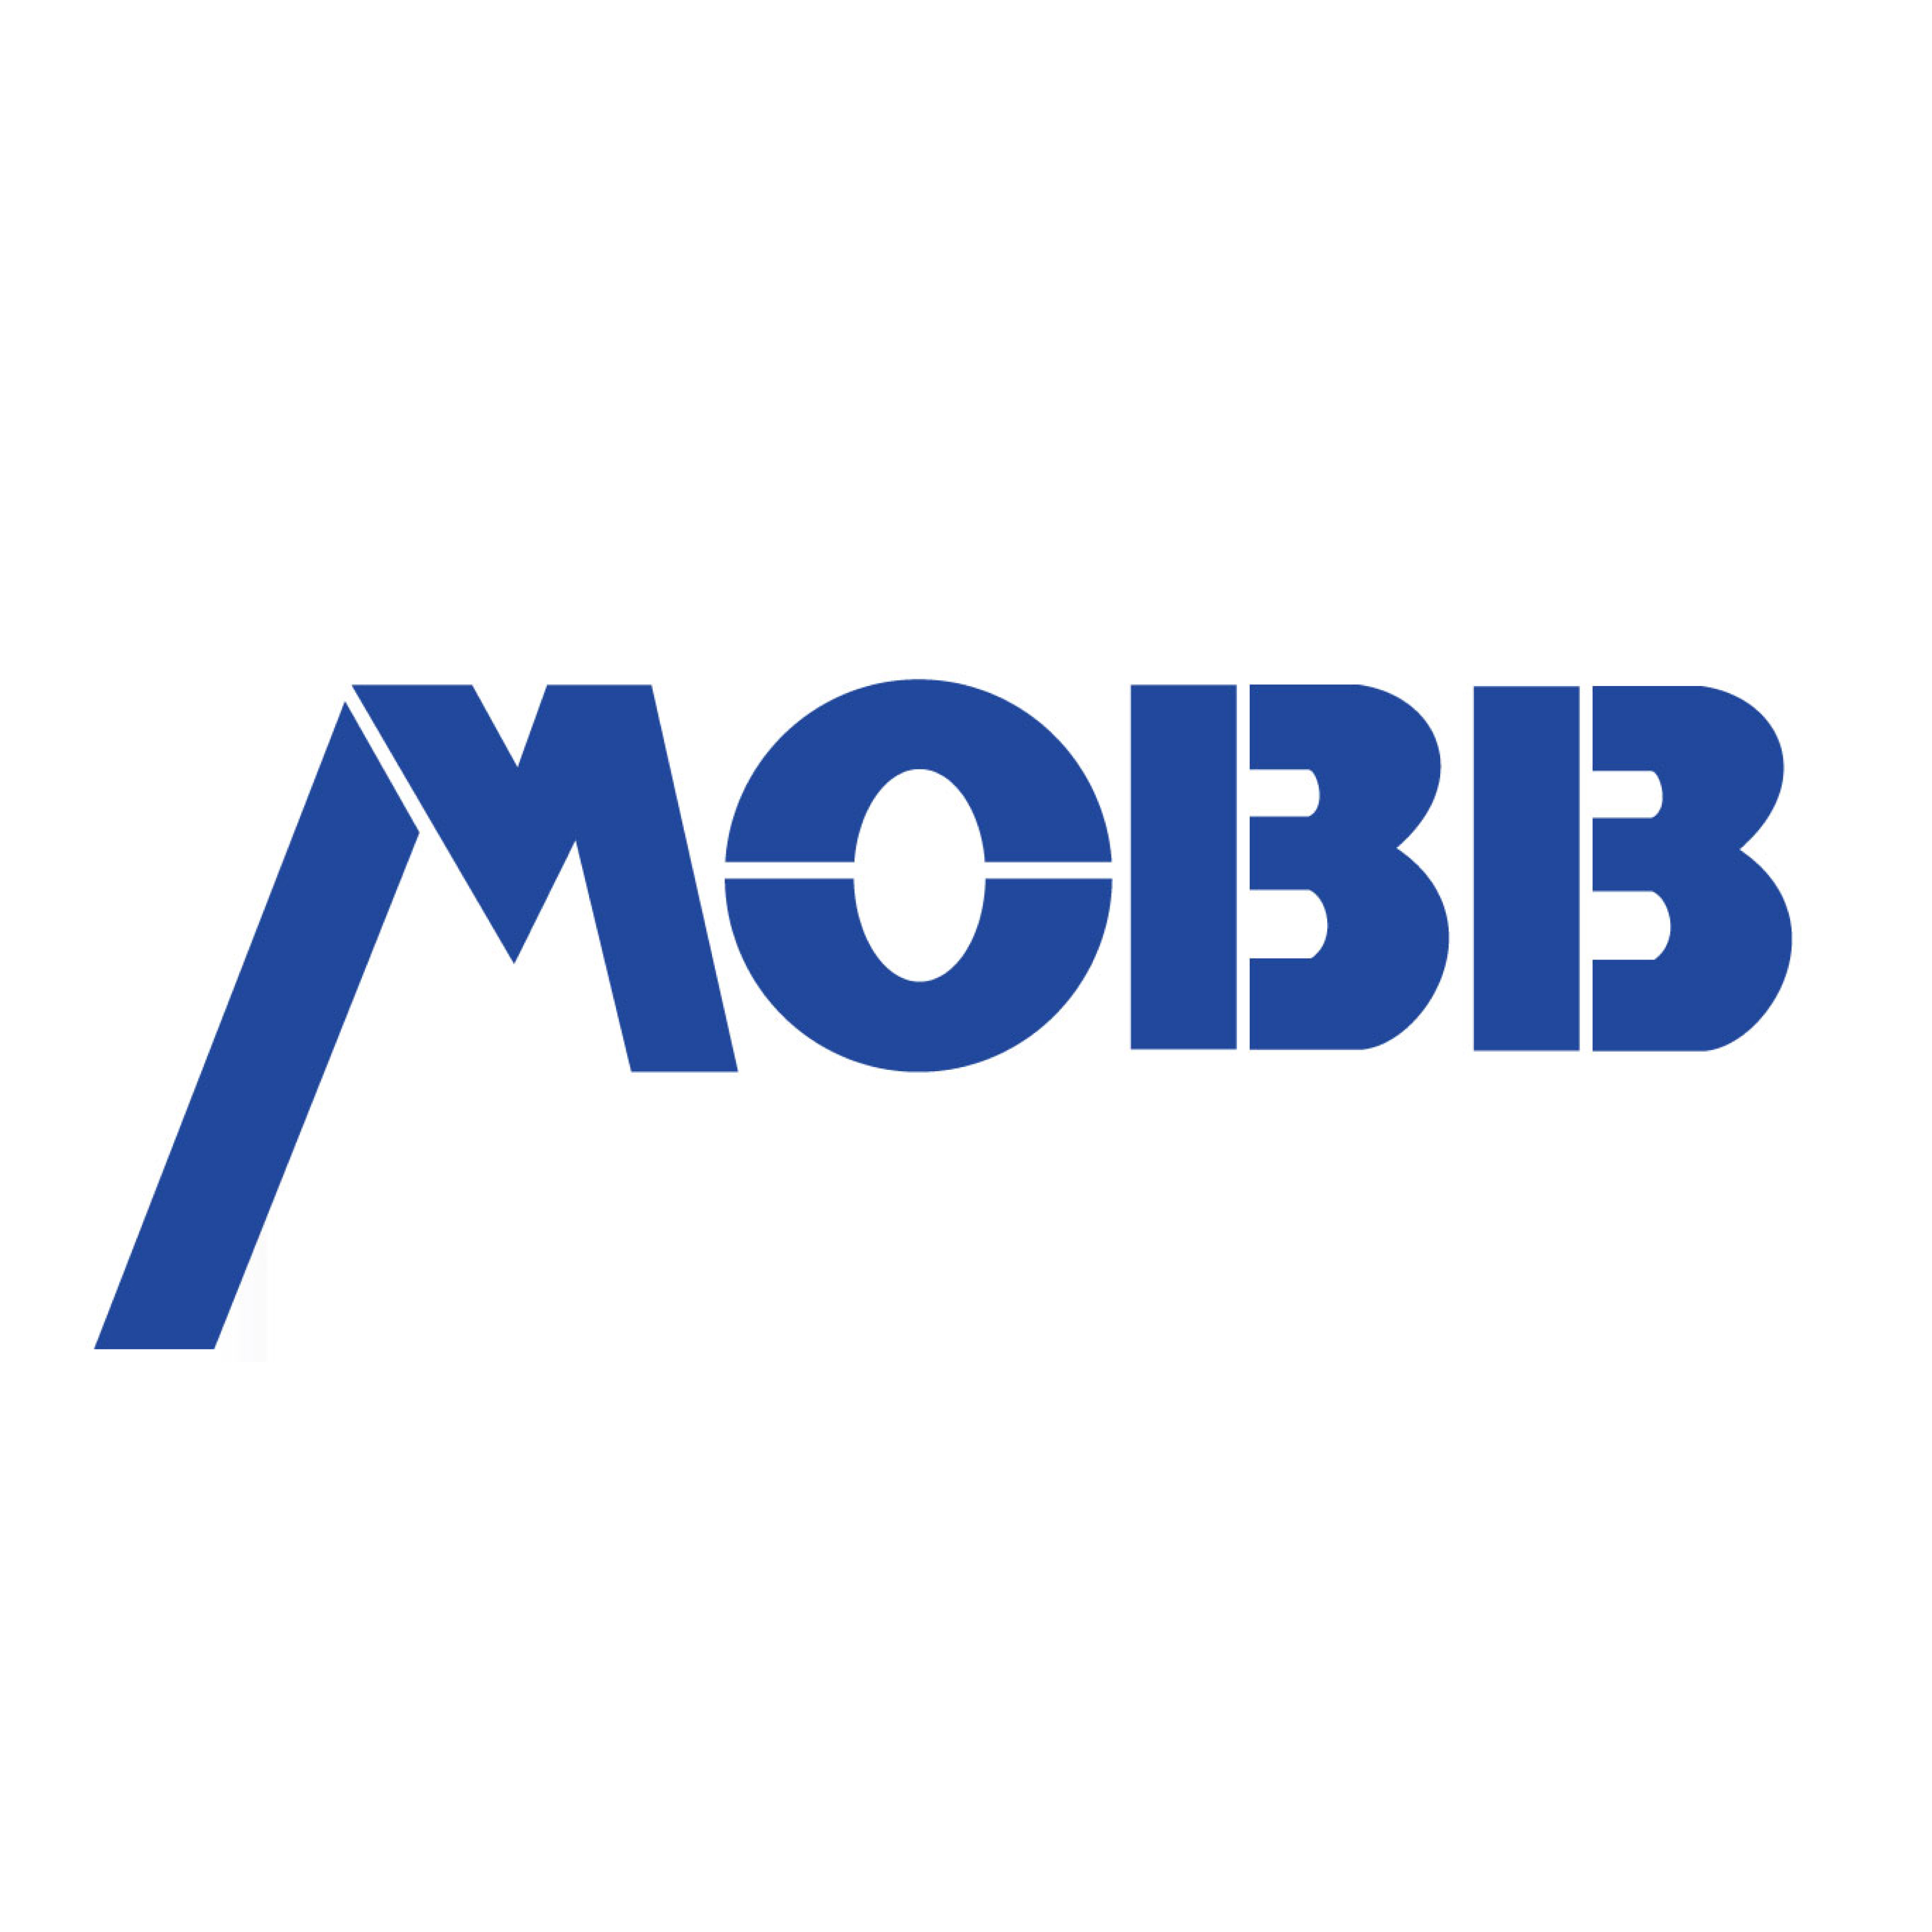 mobb